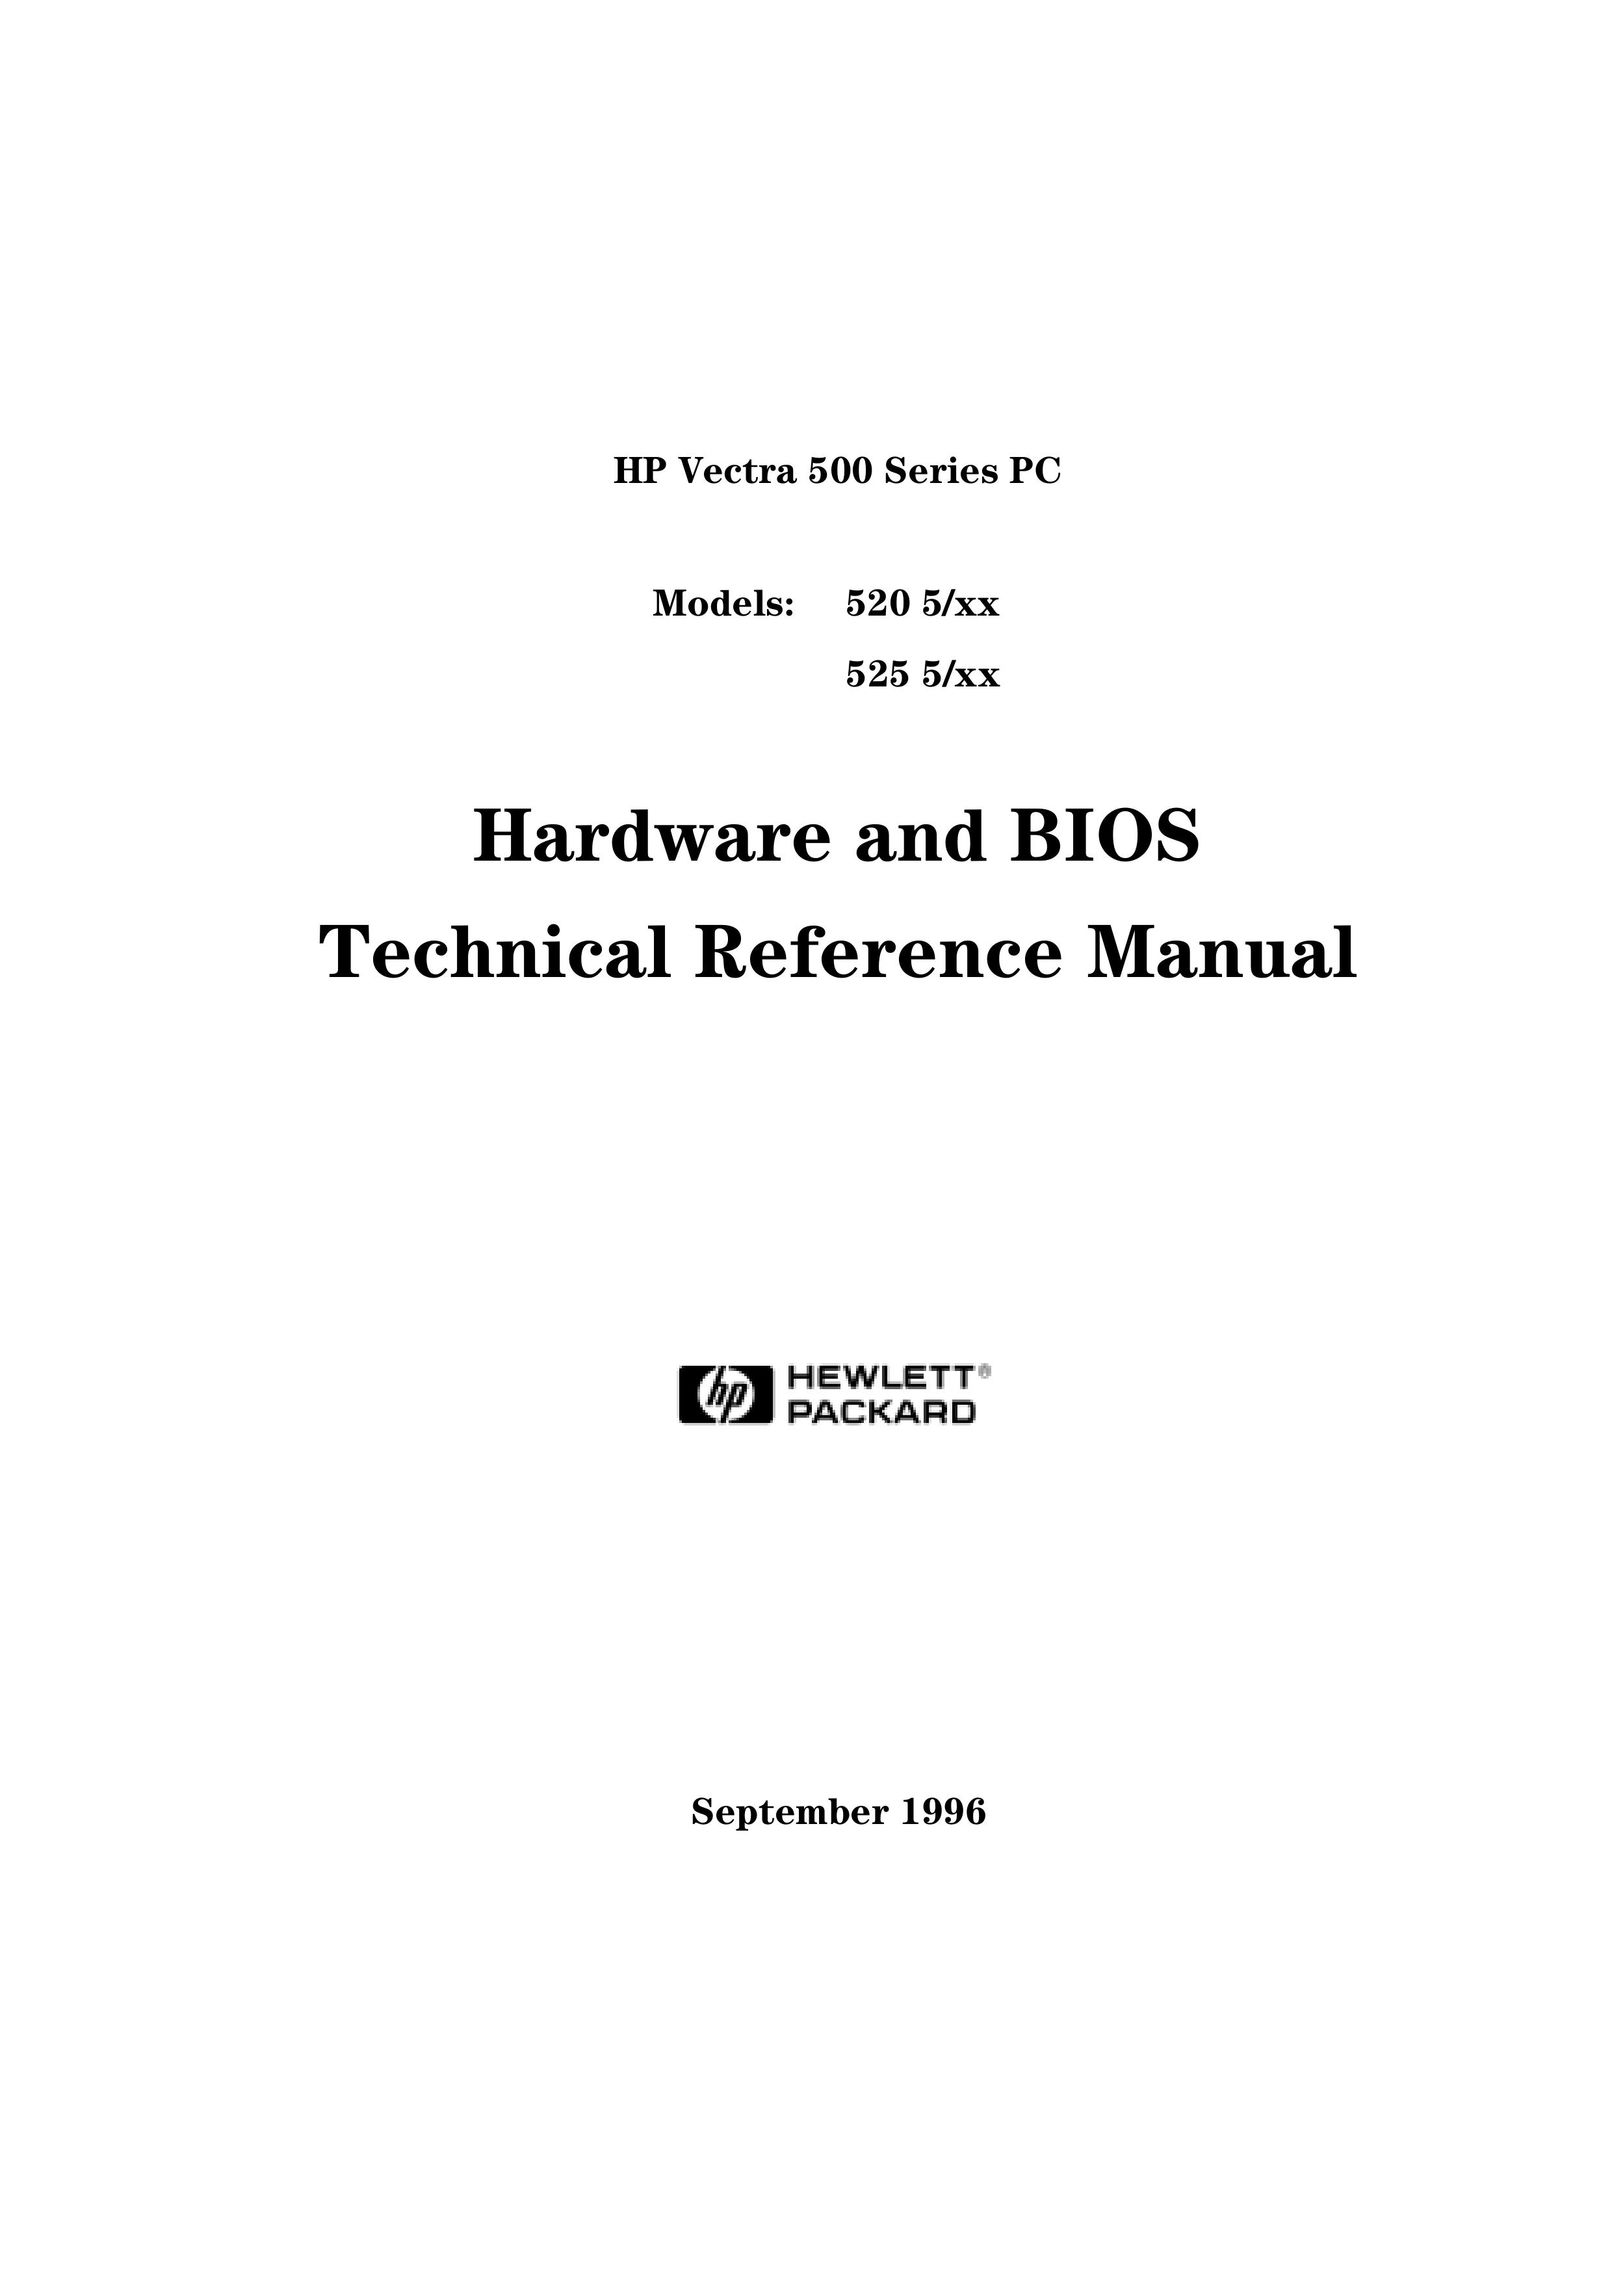 HP (Hewlett-Packard) 525 5/XX Personal Computer User Manual